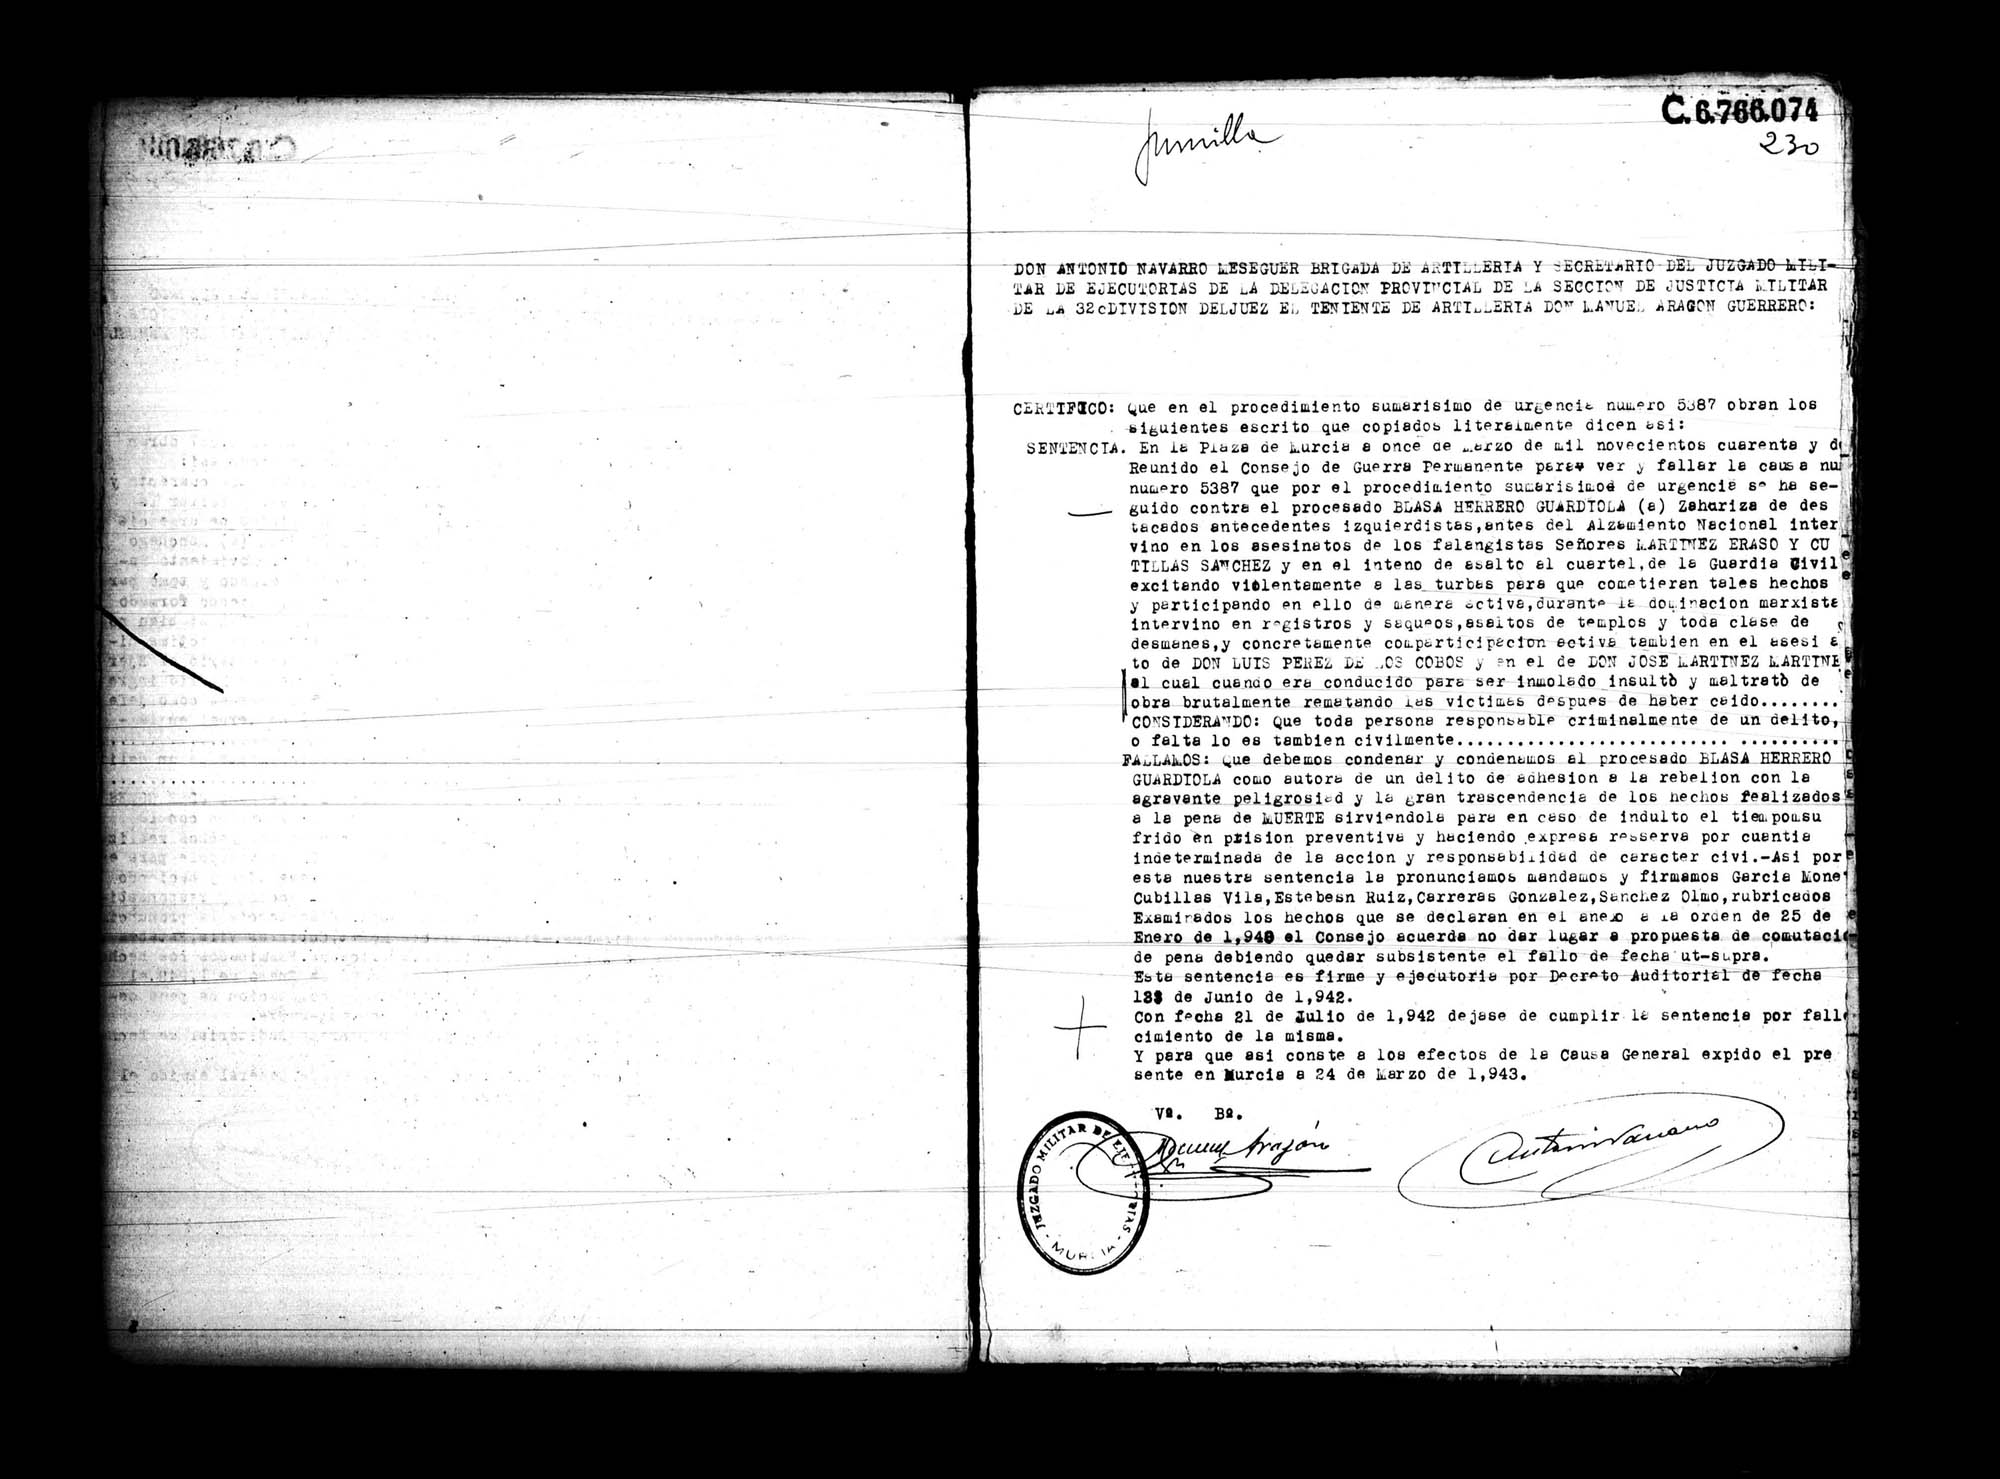 Certificado de la sentencia pronunciada contra Blasa Herrero Guardiola, causa 5387, el 11 de marzo de 1492 en Murcia.